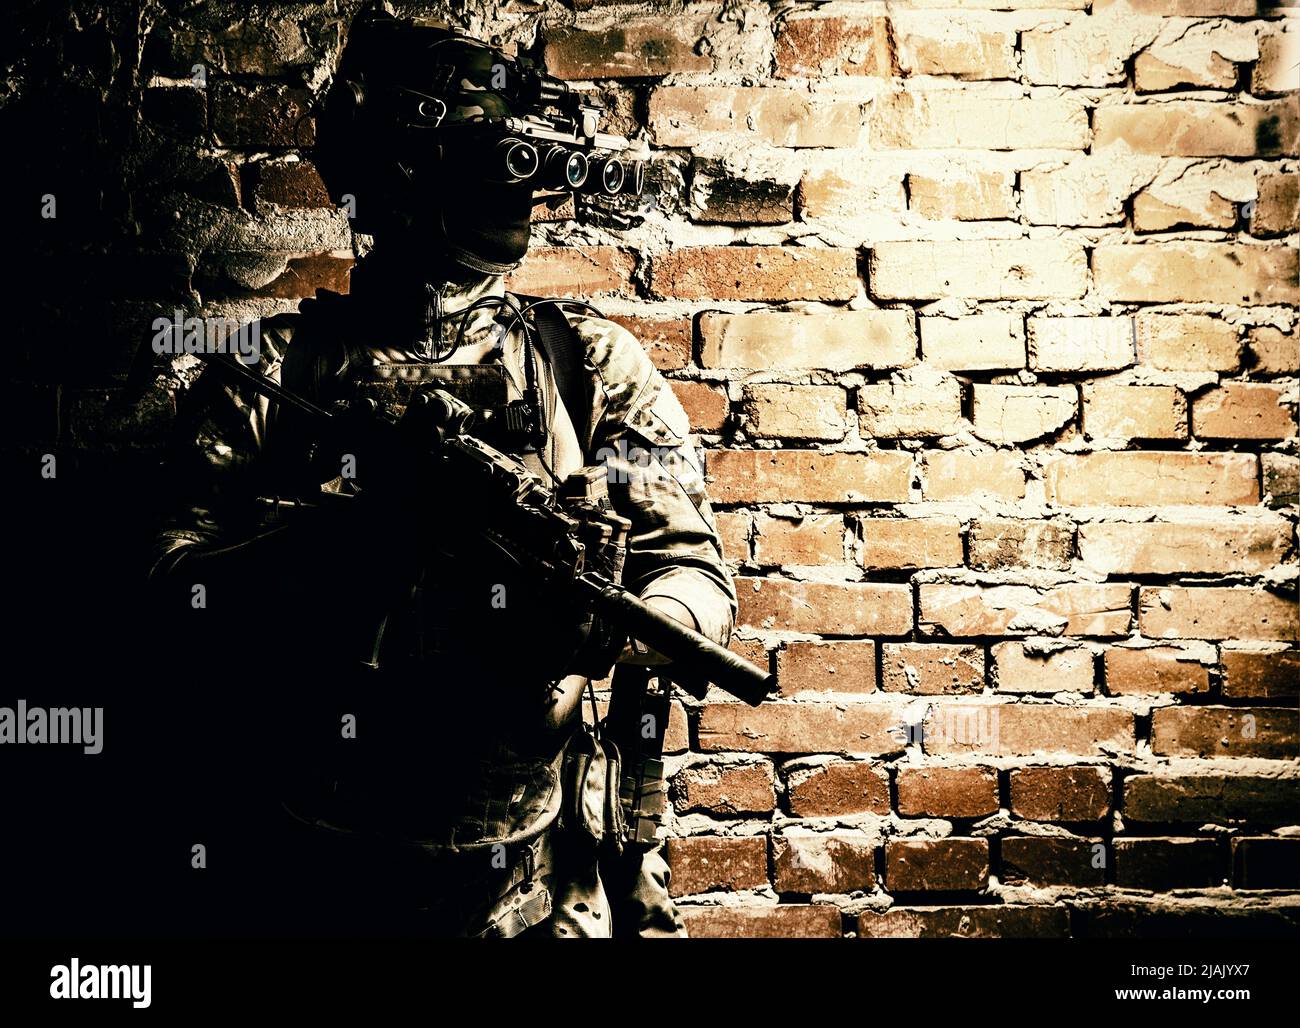 Special Forces Kämpfer, der gegen eine Ziegelwand steht, bewaffnet mit Wärmebildgerät auf Helm und Maschinengewehr. Stockfoto